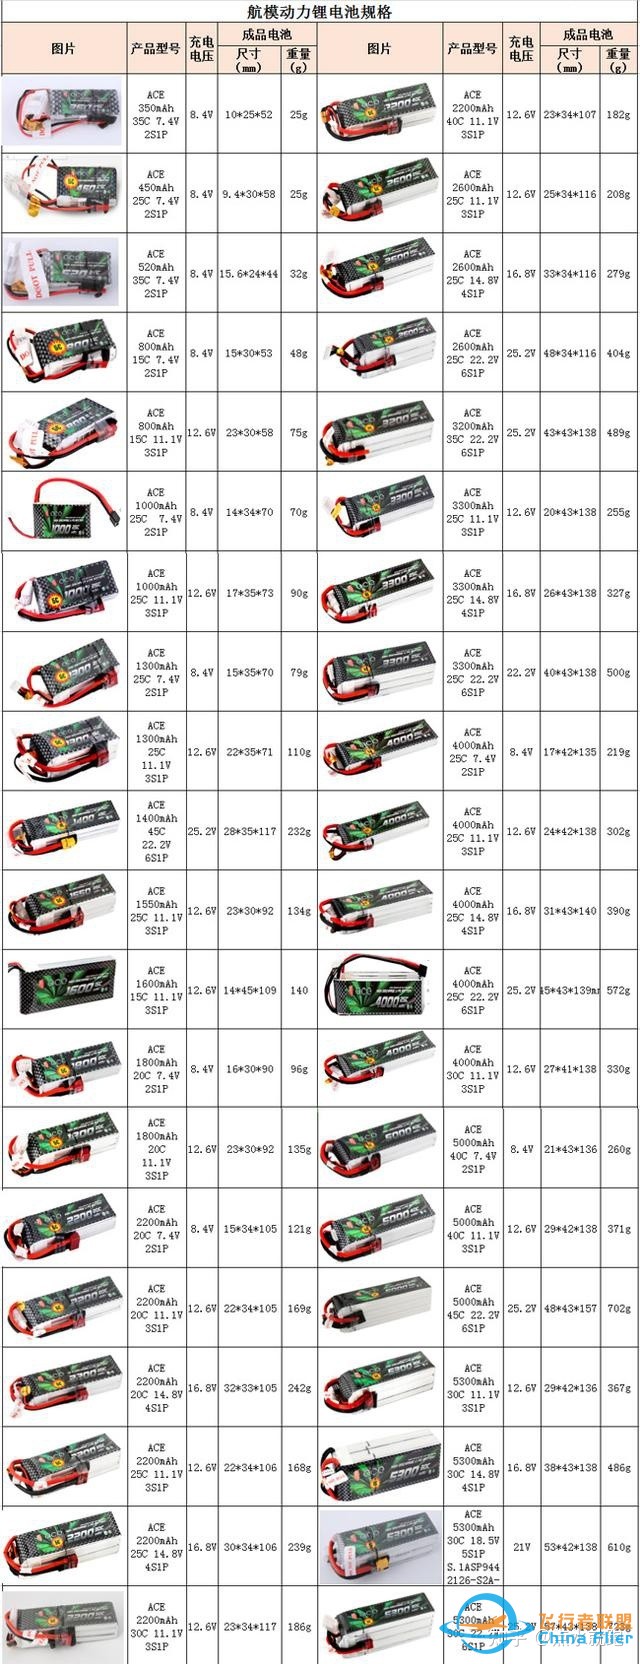 航模动力锂电池规格大全-2.jpg